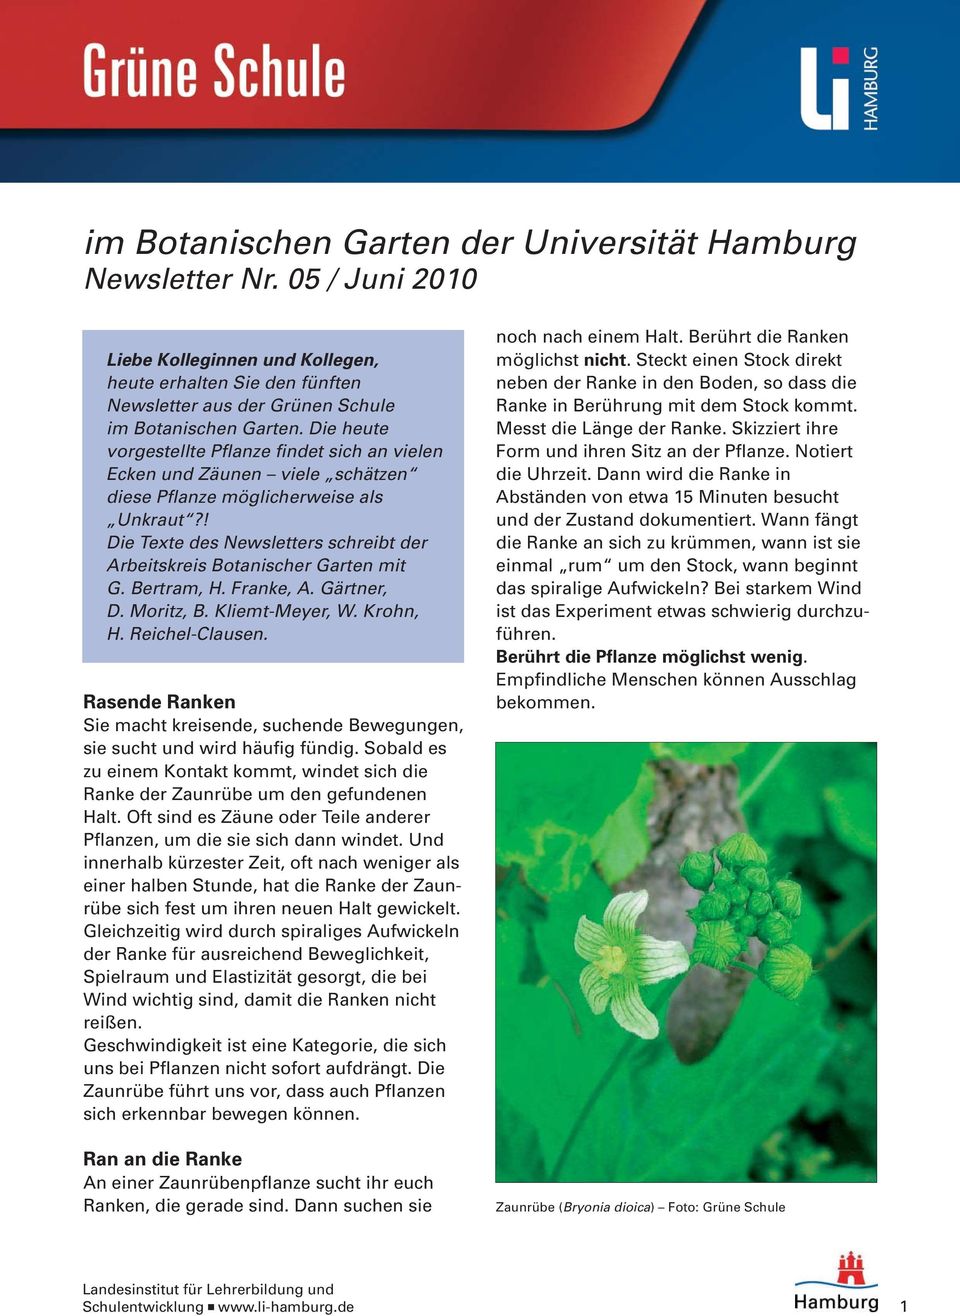 ! Die Texte des Newsletters schreibt der Arbeitskreis Botanischer Garten mit G. Bertram, H. Franke, A. Gärtner, D. Moritz, B. Kliemt-Meyer, W. Krohn, H. Reichel-Clausen.